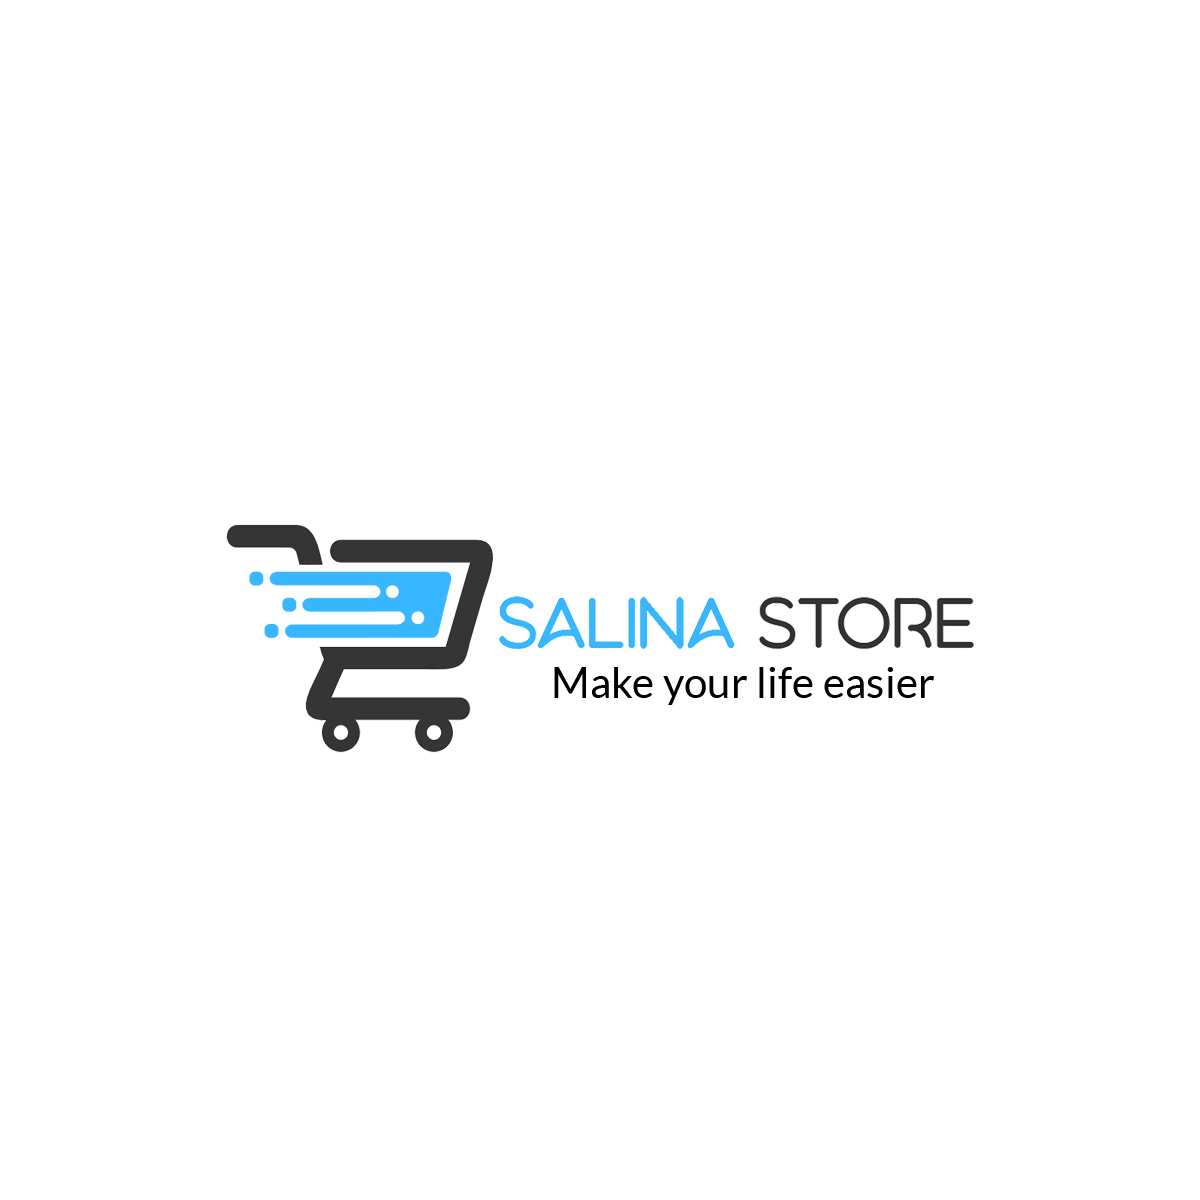 Salina Store